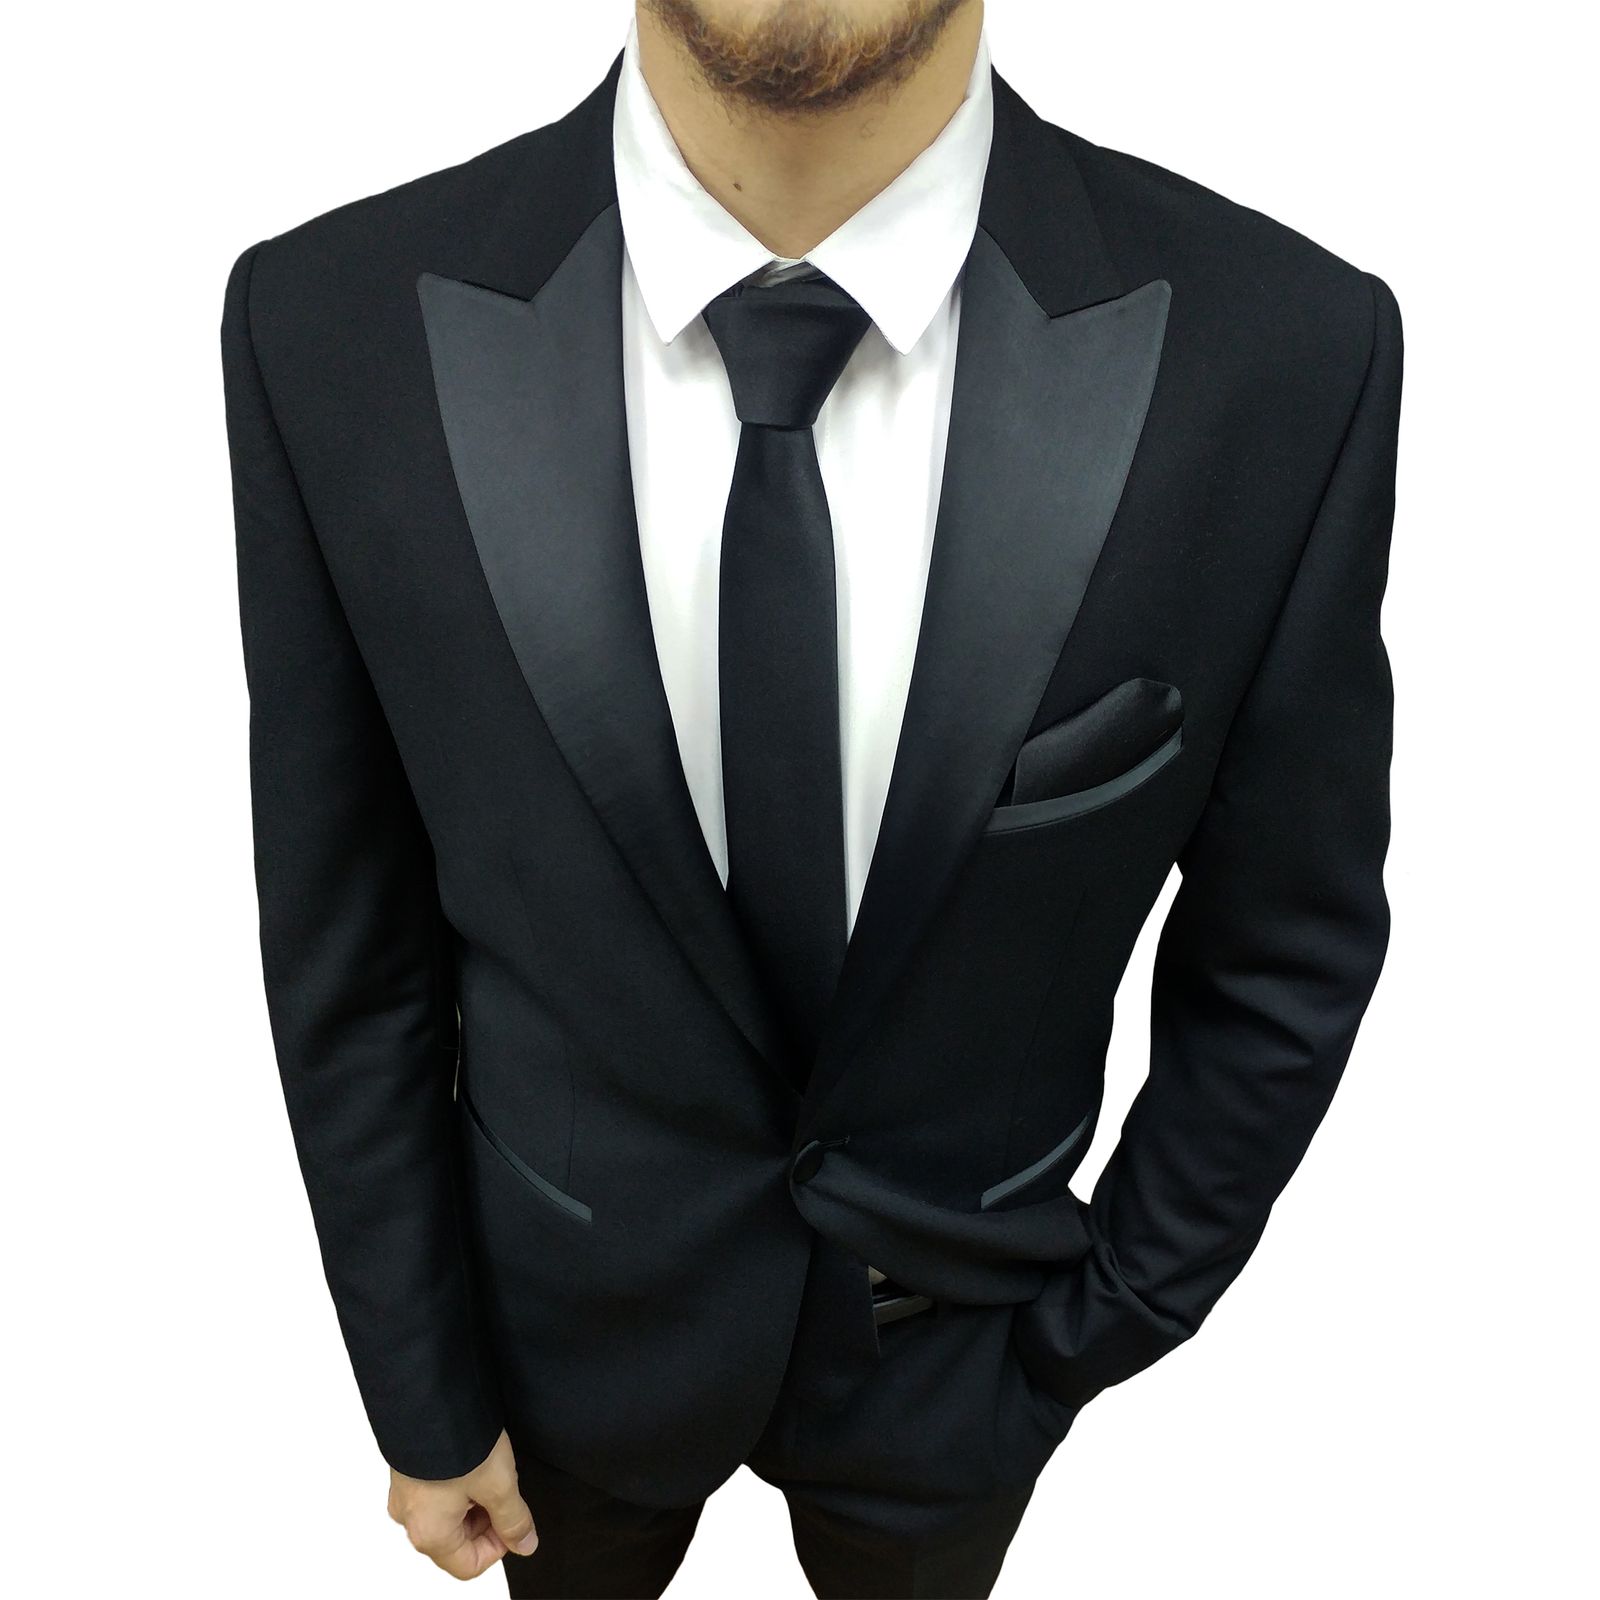  ست کراوات و پاپیون و دستمال جیب مردانه کد B3 -  - 2